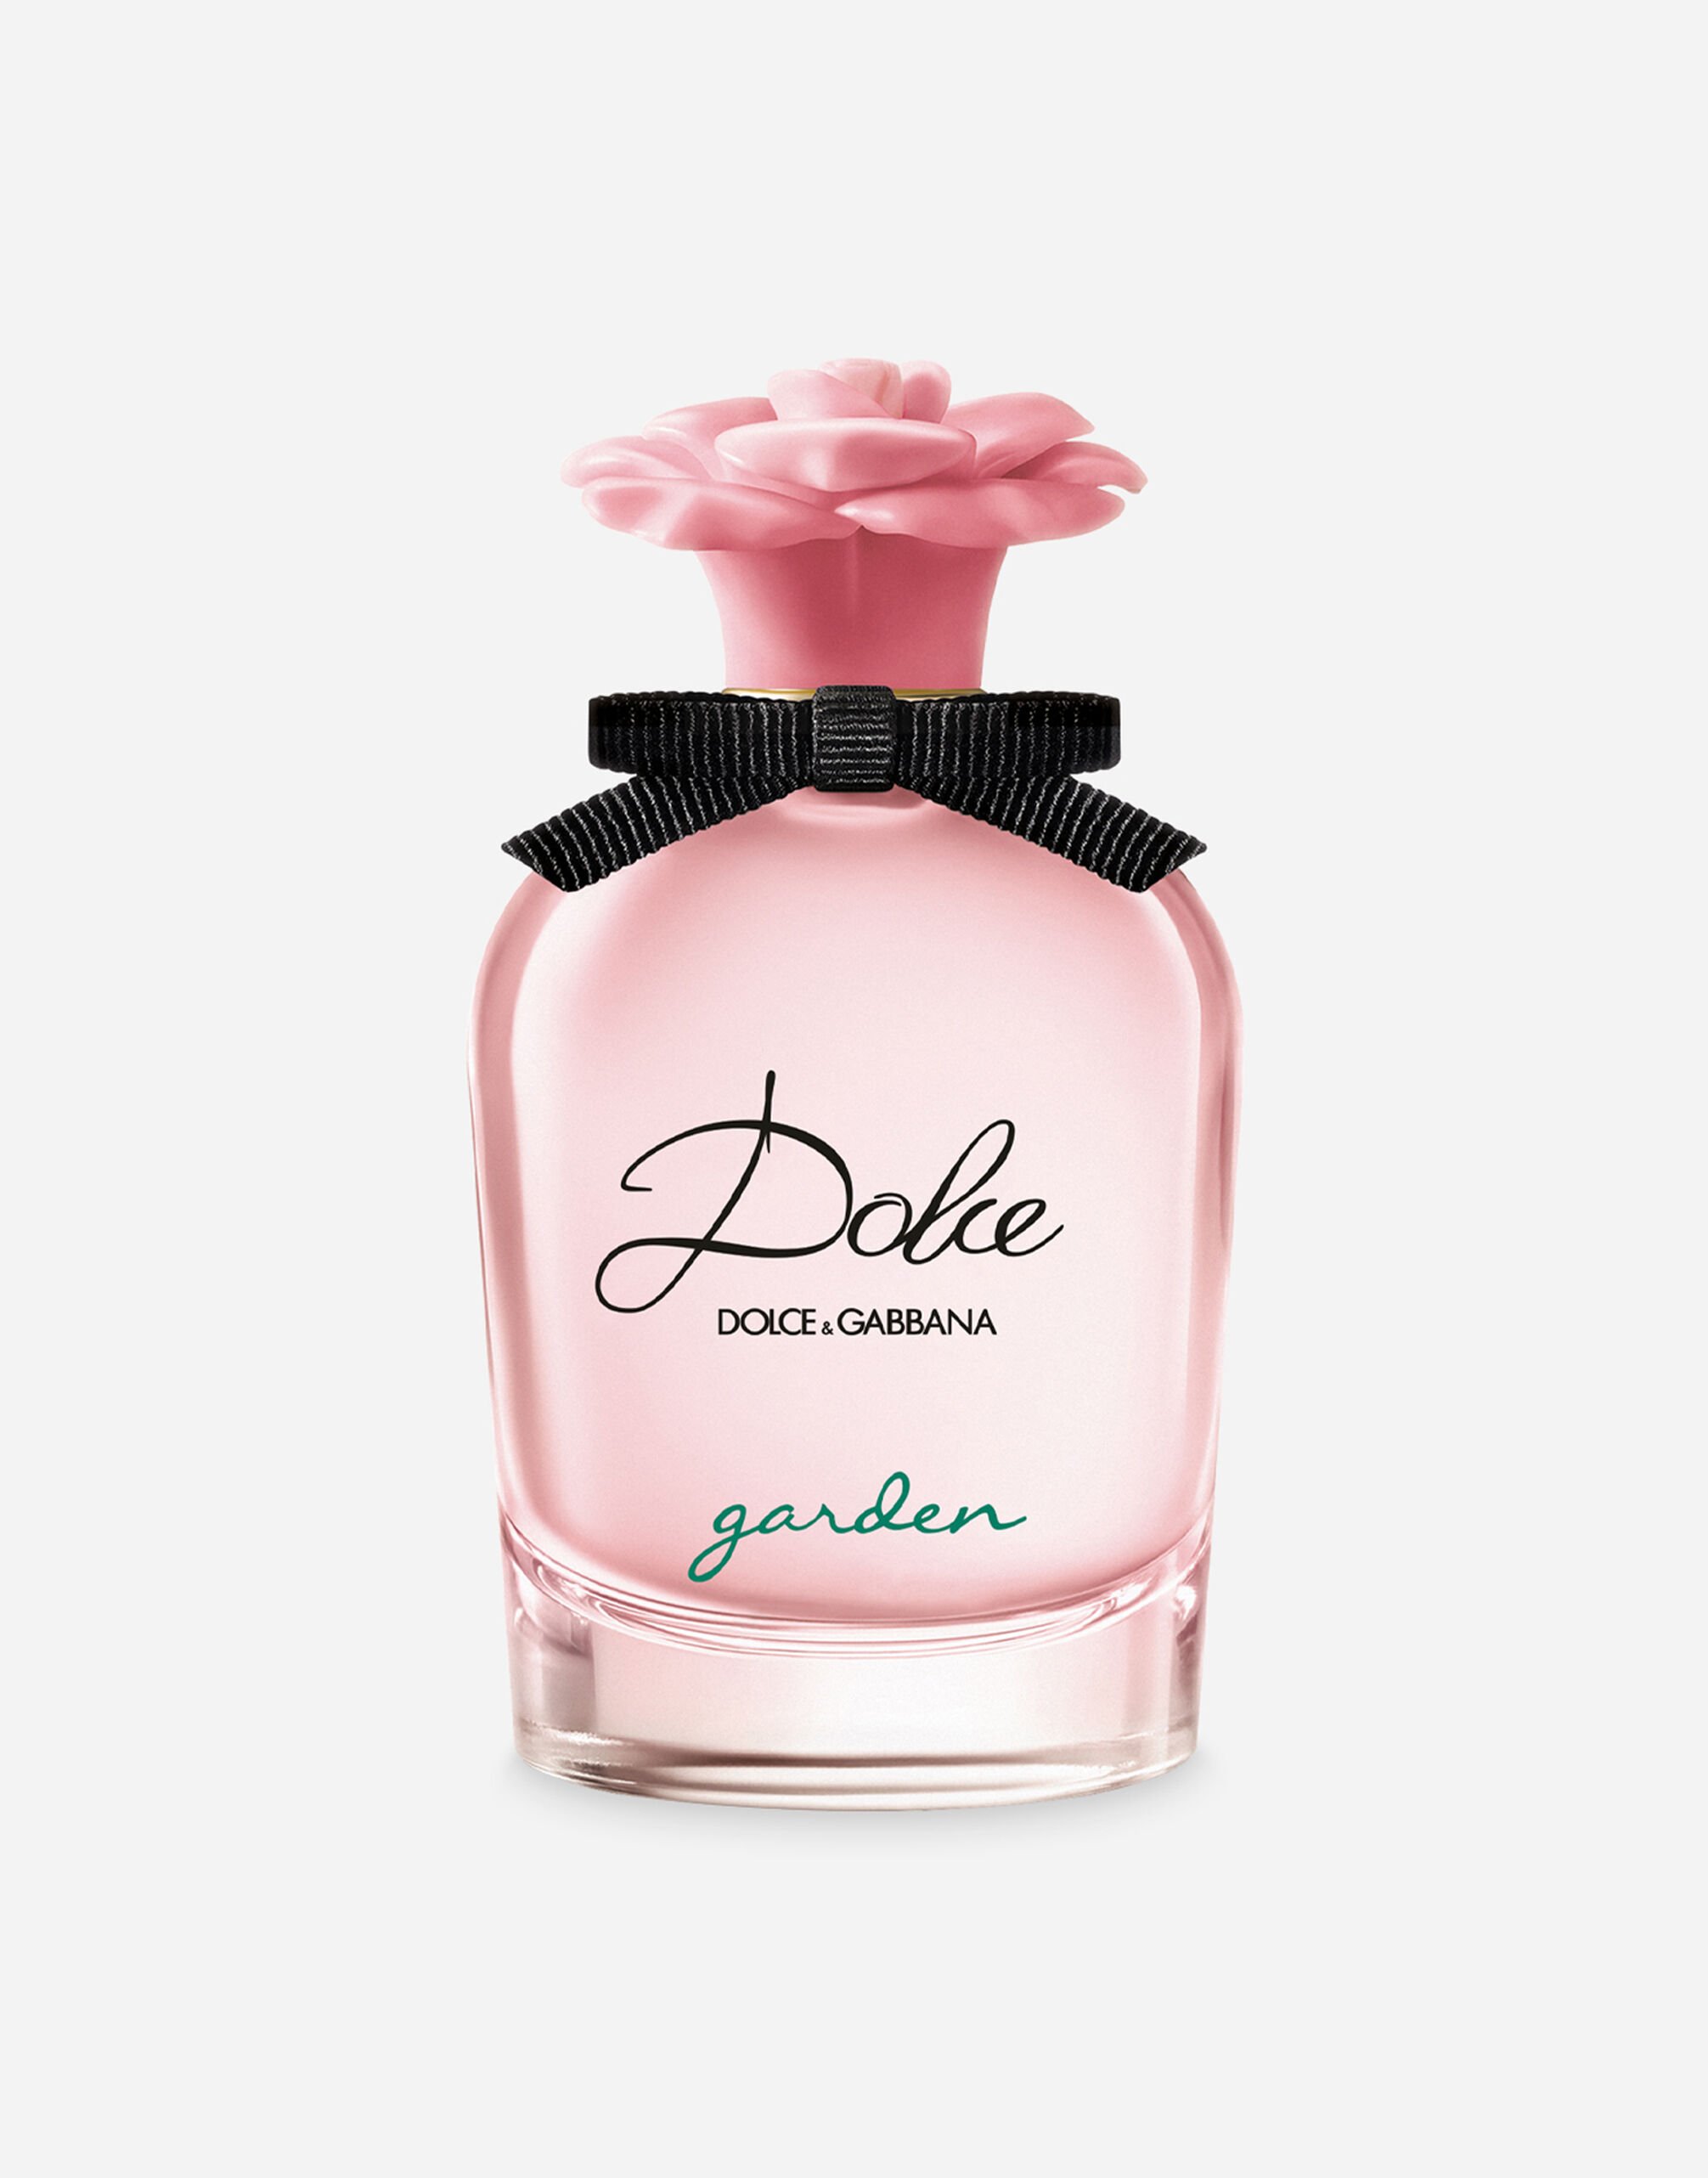 Dolce & Gabbana Dolce Garden Eau de Parfum - VT00G4VT000